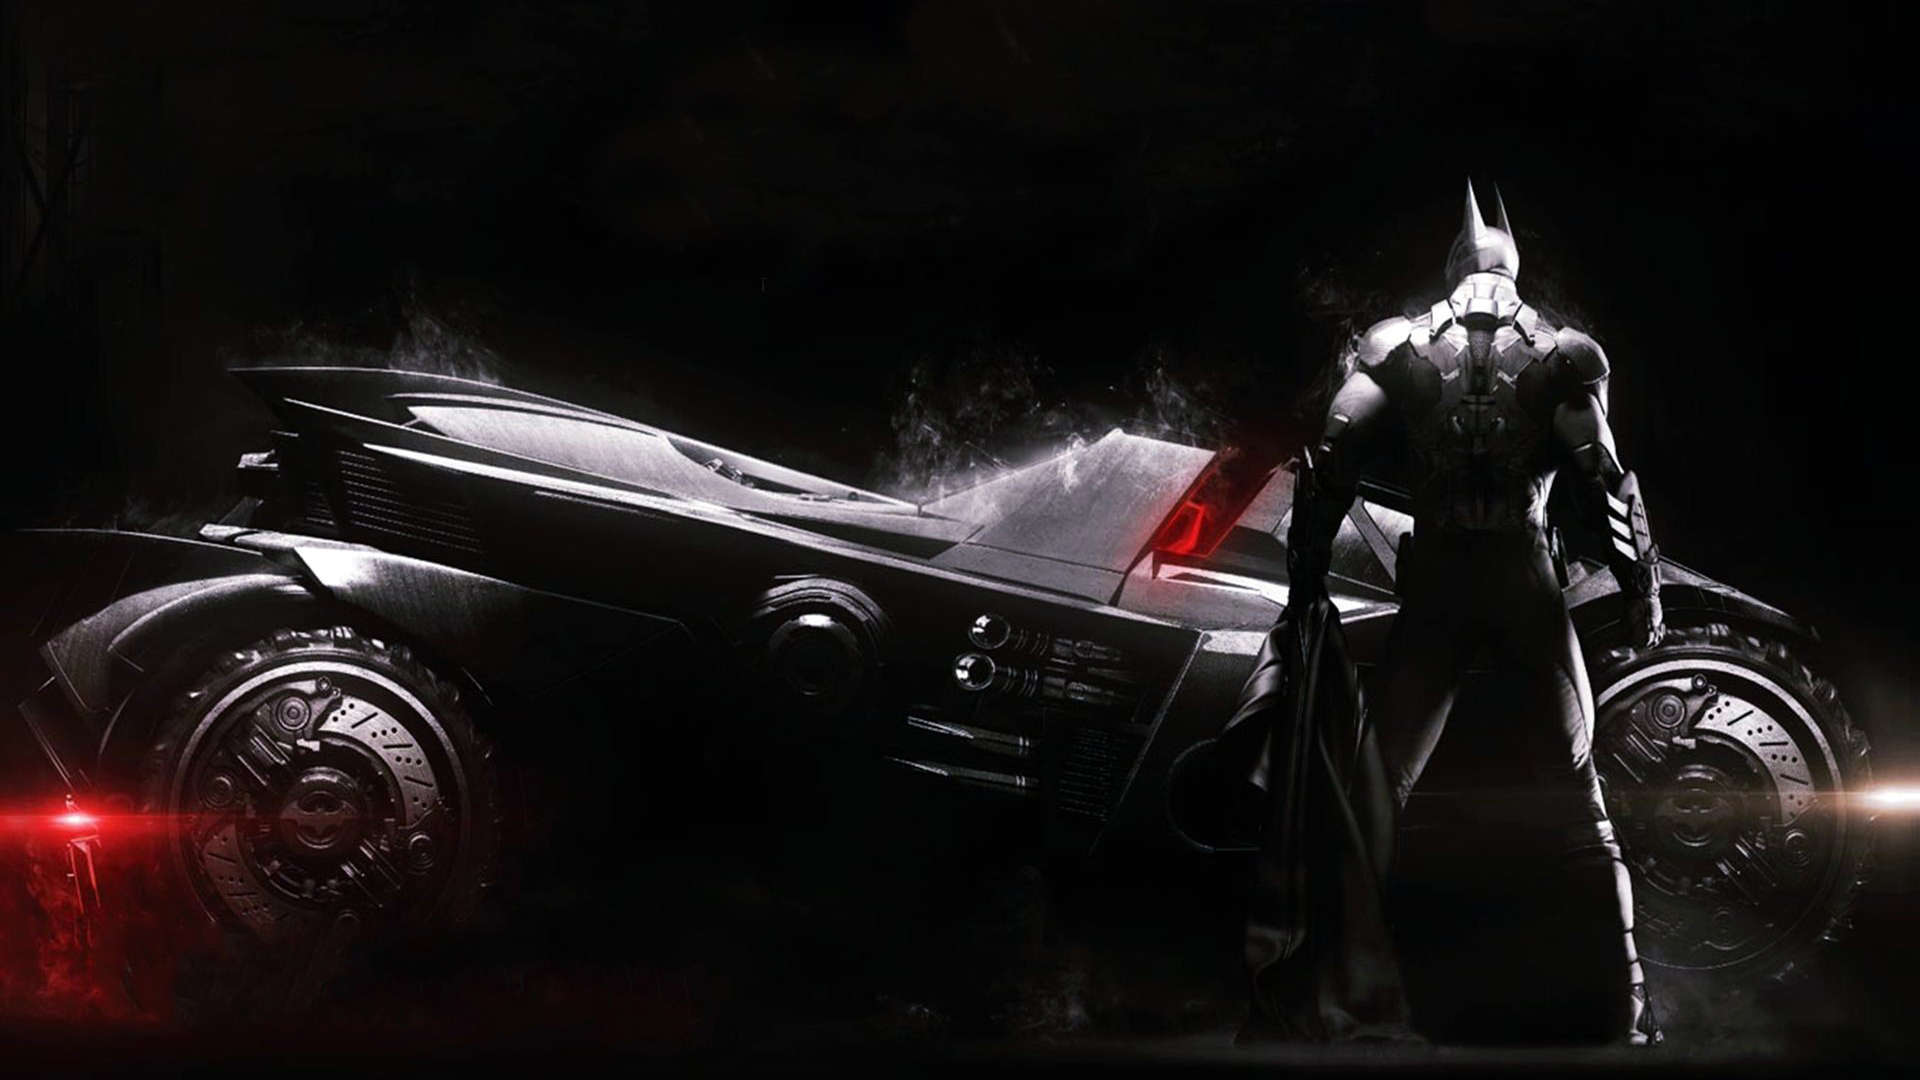 batman vs superman fonds d'écran hd,homme chauve souris,personnage fictif,super héros,véhicule,ligue de justice